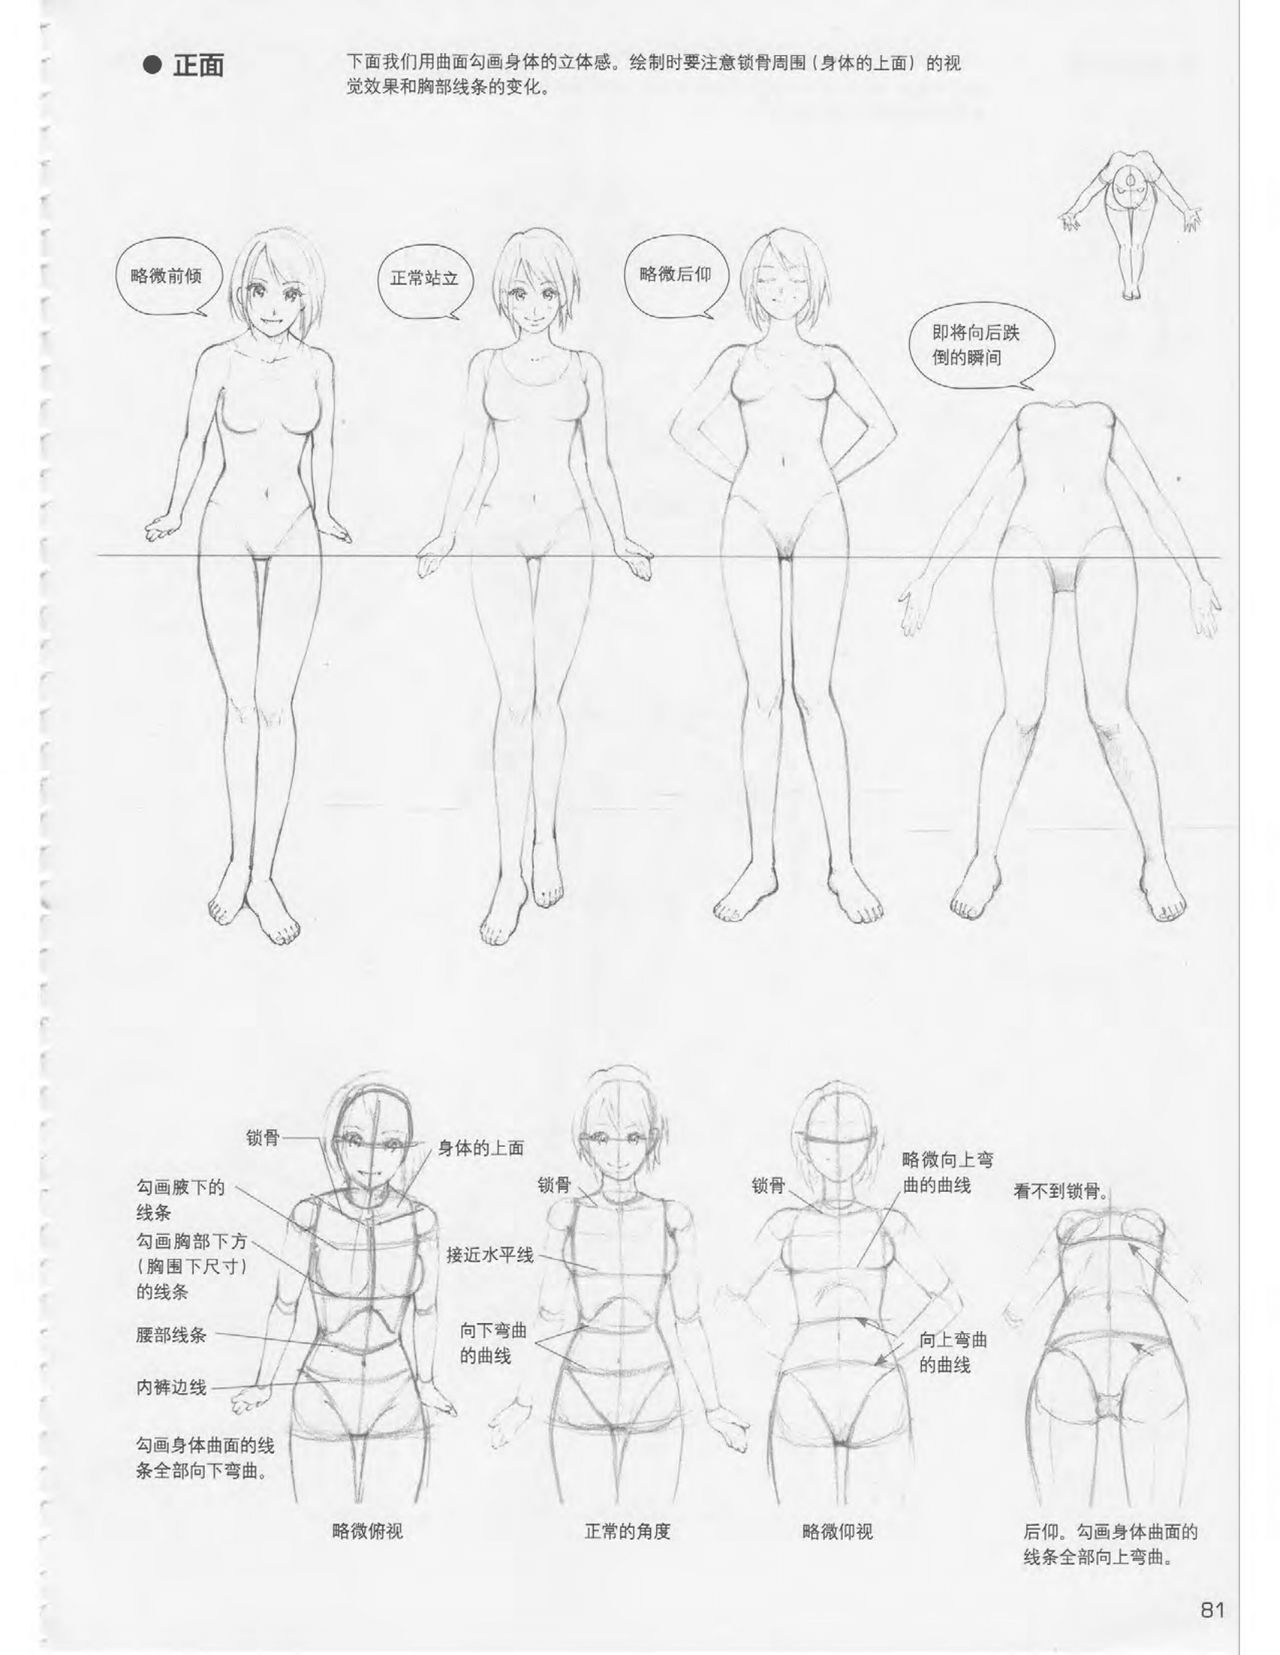 Japanese Manga Master Lecture 3: Lin Akira and Kakumaru Maru Talk About Glamorous Character Modeling 81